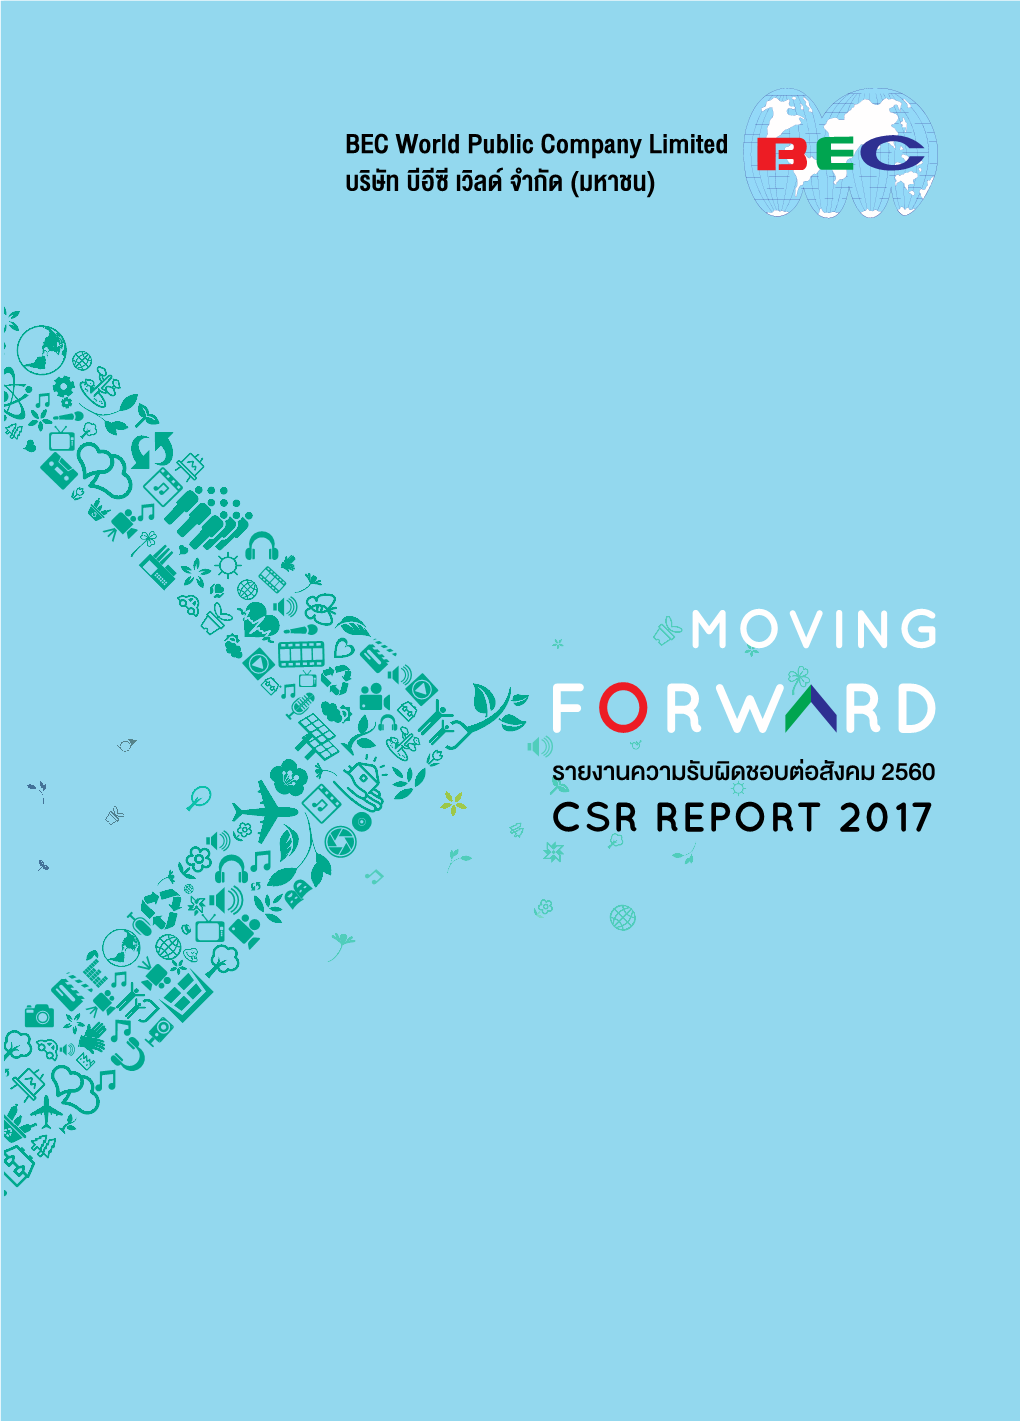 CSR REPORT 2017 CSR REPORT BEC World Public Company Limited Public Company BEC World (มหาชน) บีอีซี เว�ลด จำกัด บร�ษัท